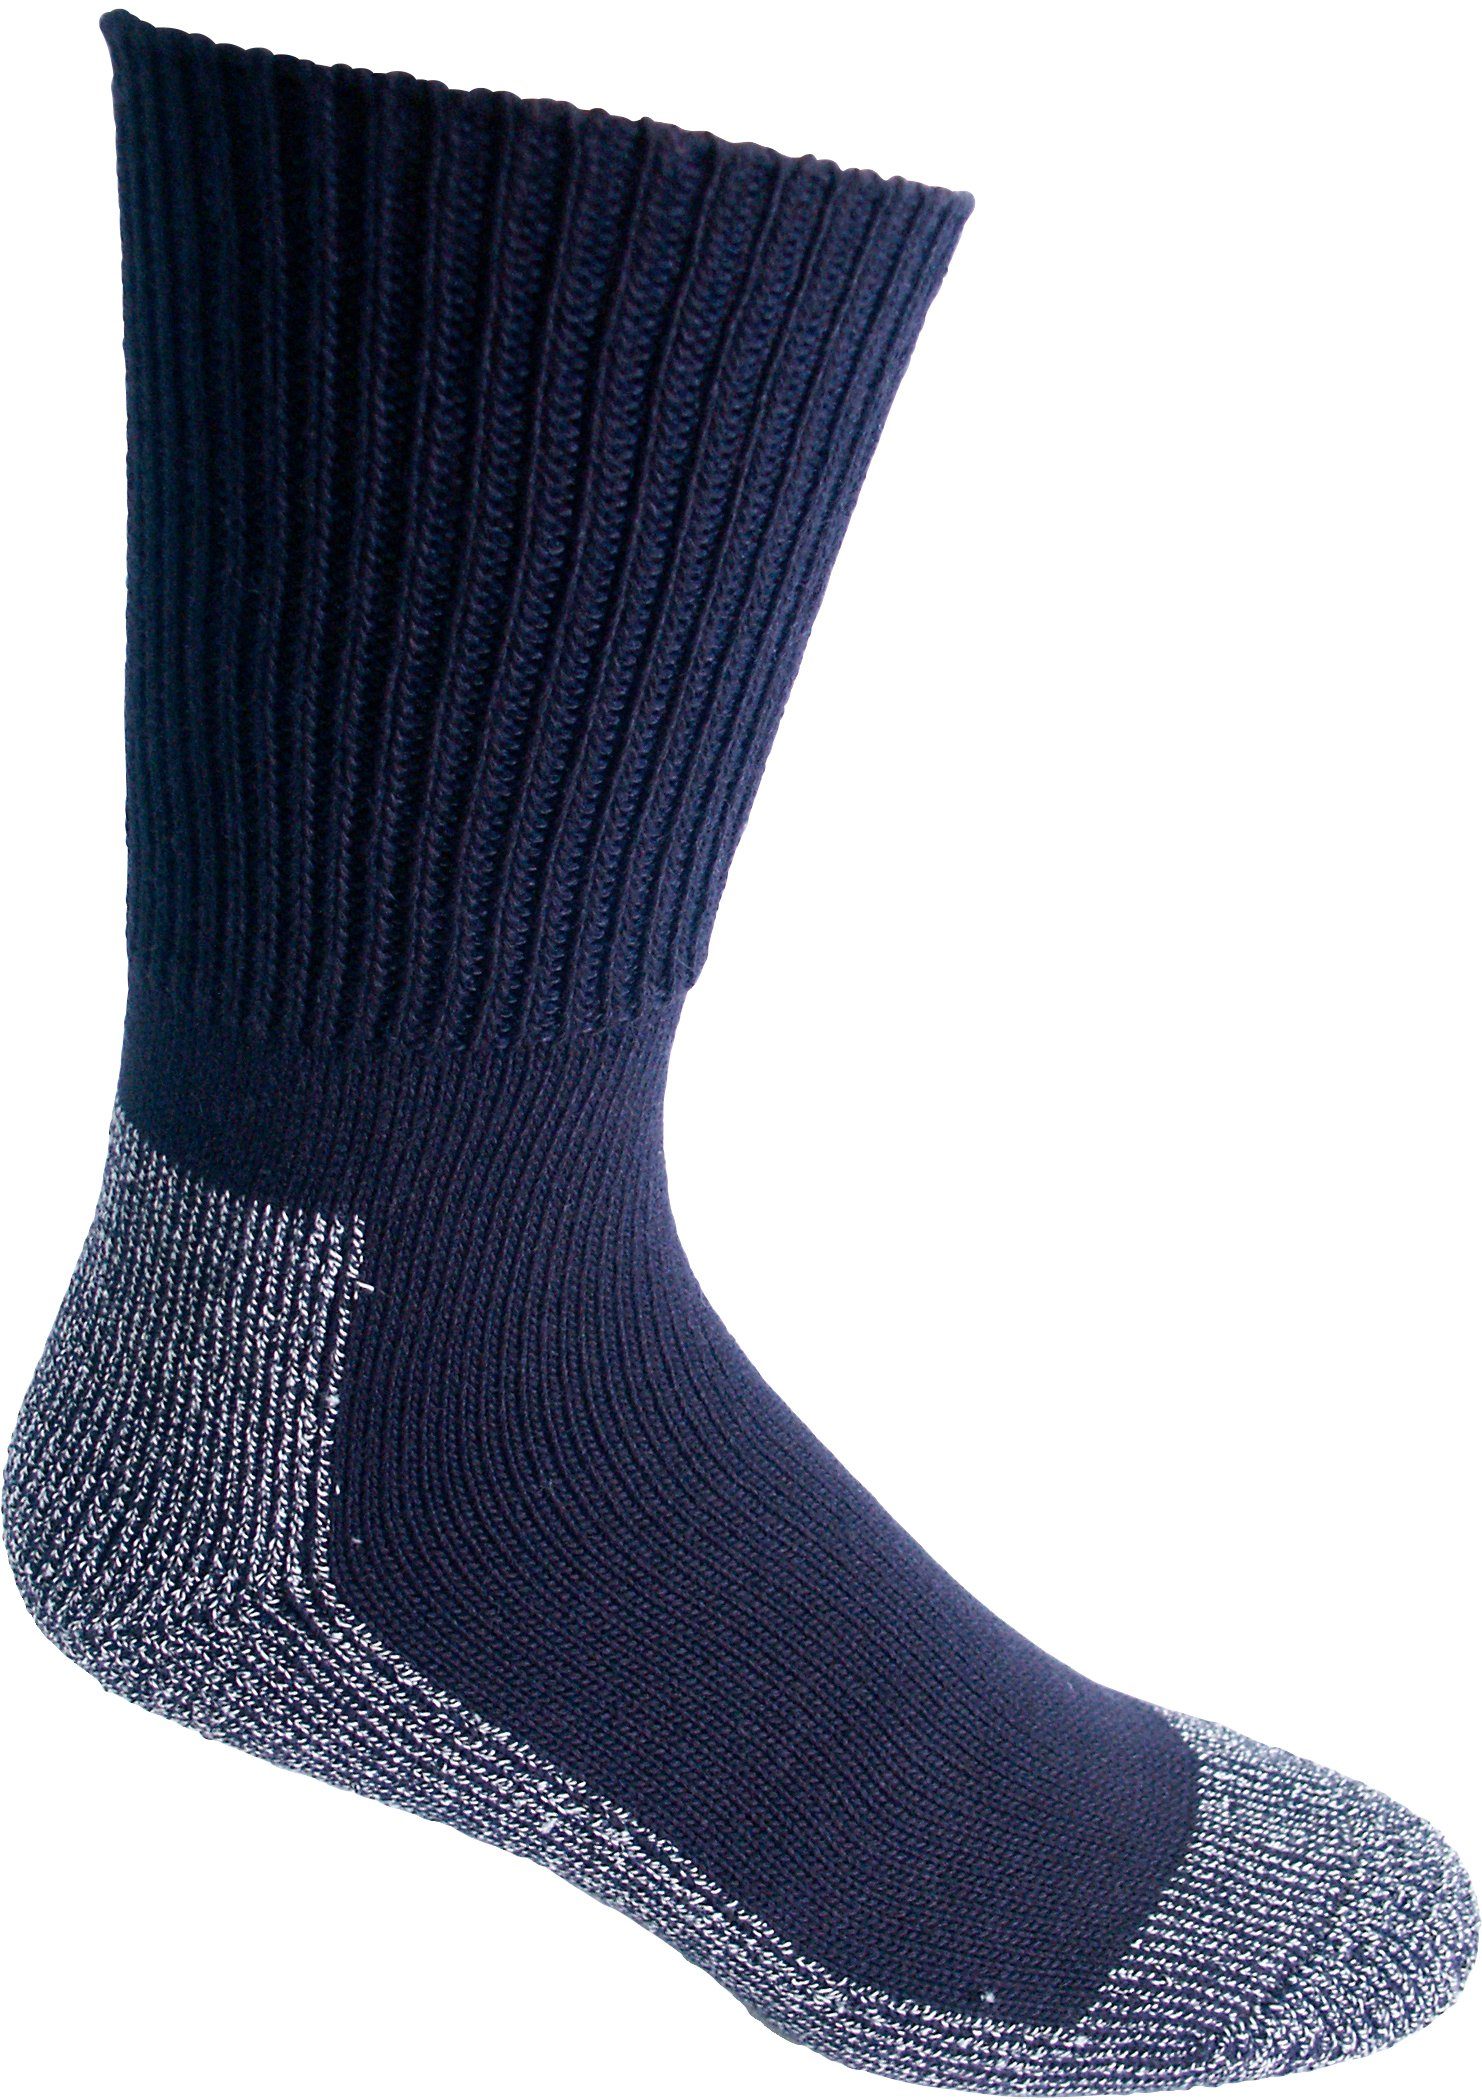 Wäsche/Bademode Socken Nordpol Funktionssocken F3 (Set, 2-Paar) kurz, für Stiefel, Arbeitsschuhe und Wanderschuhe